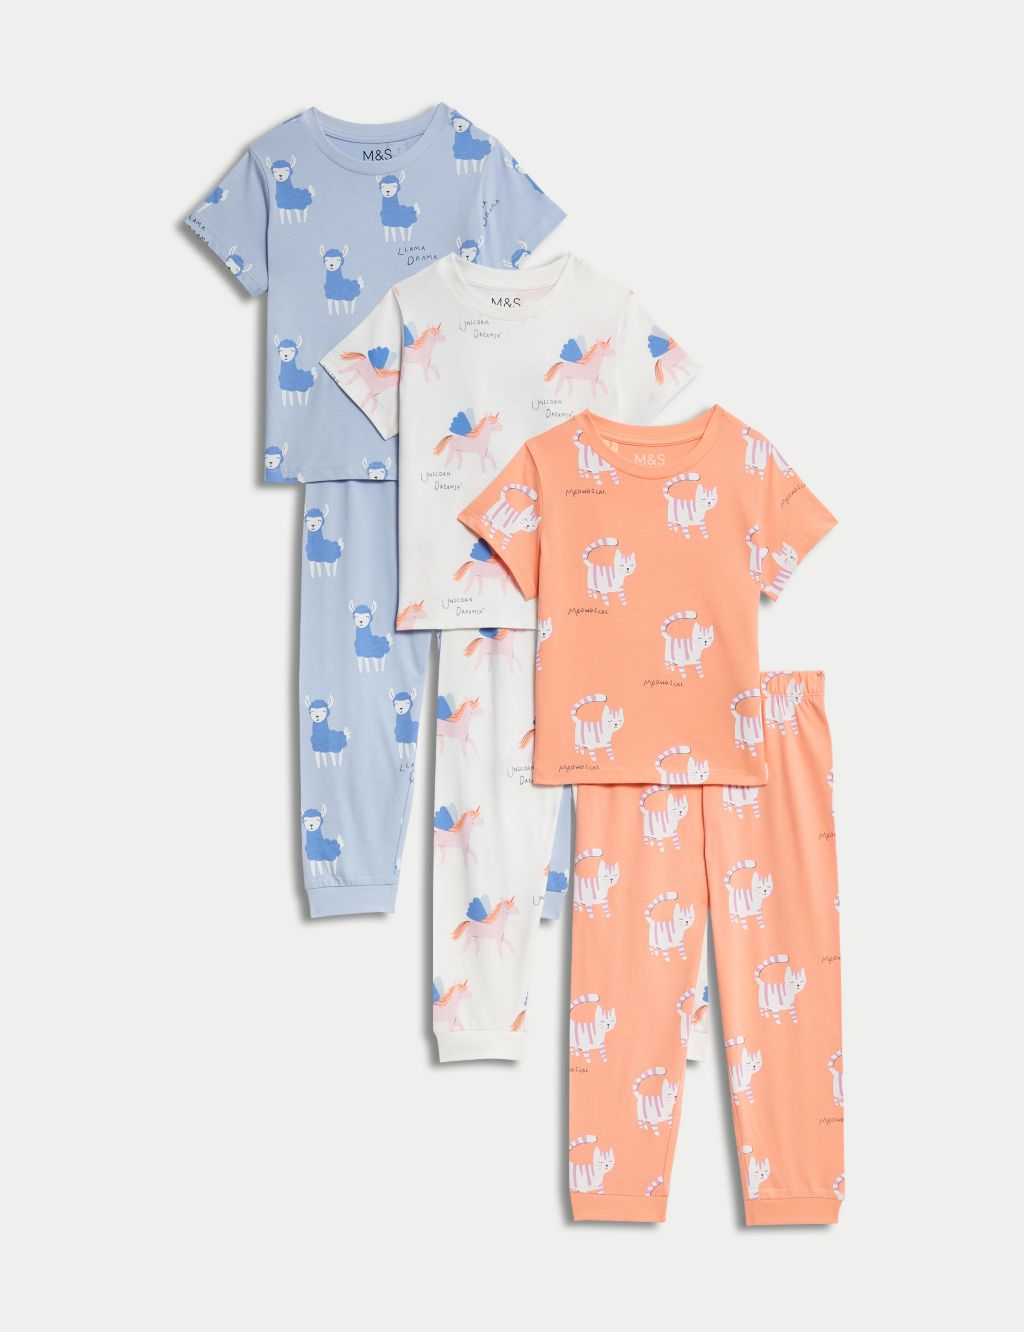 3pk Pure Cotton Animal Pyjama Sets (1-8 Yrs)